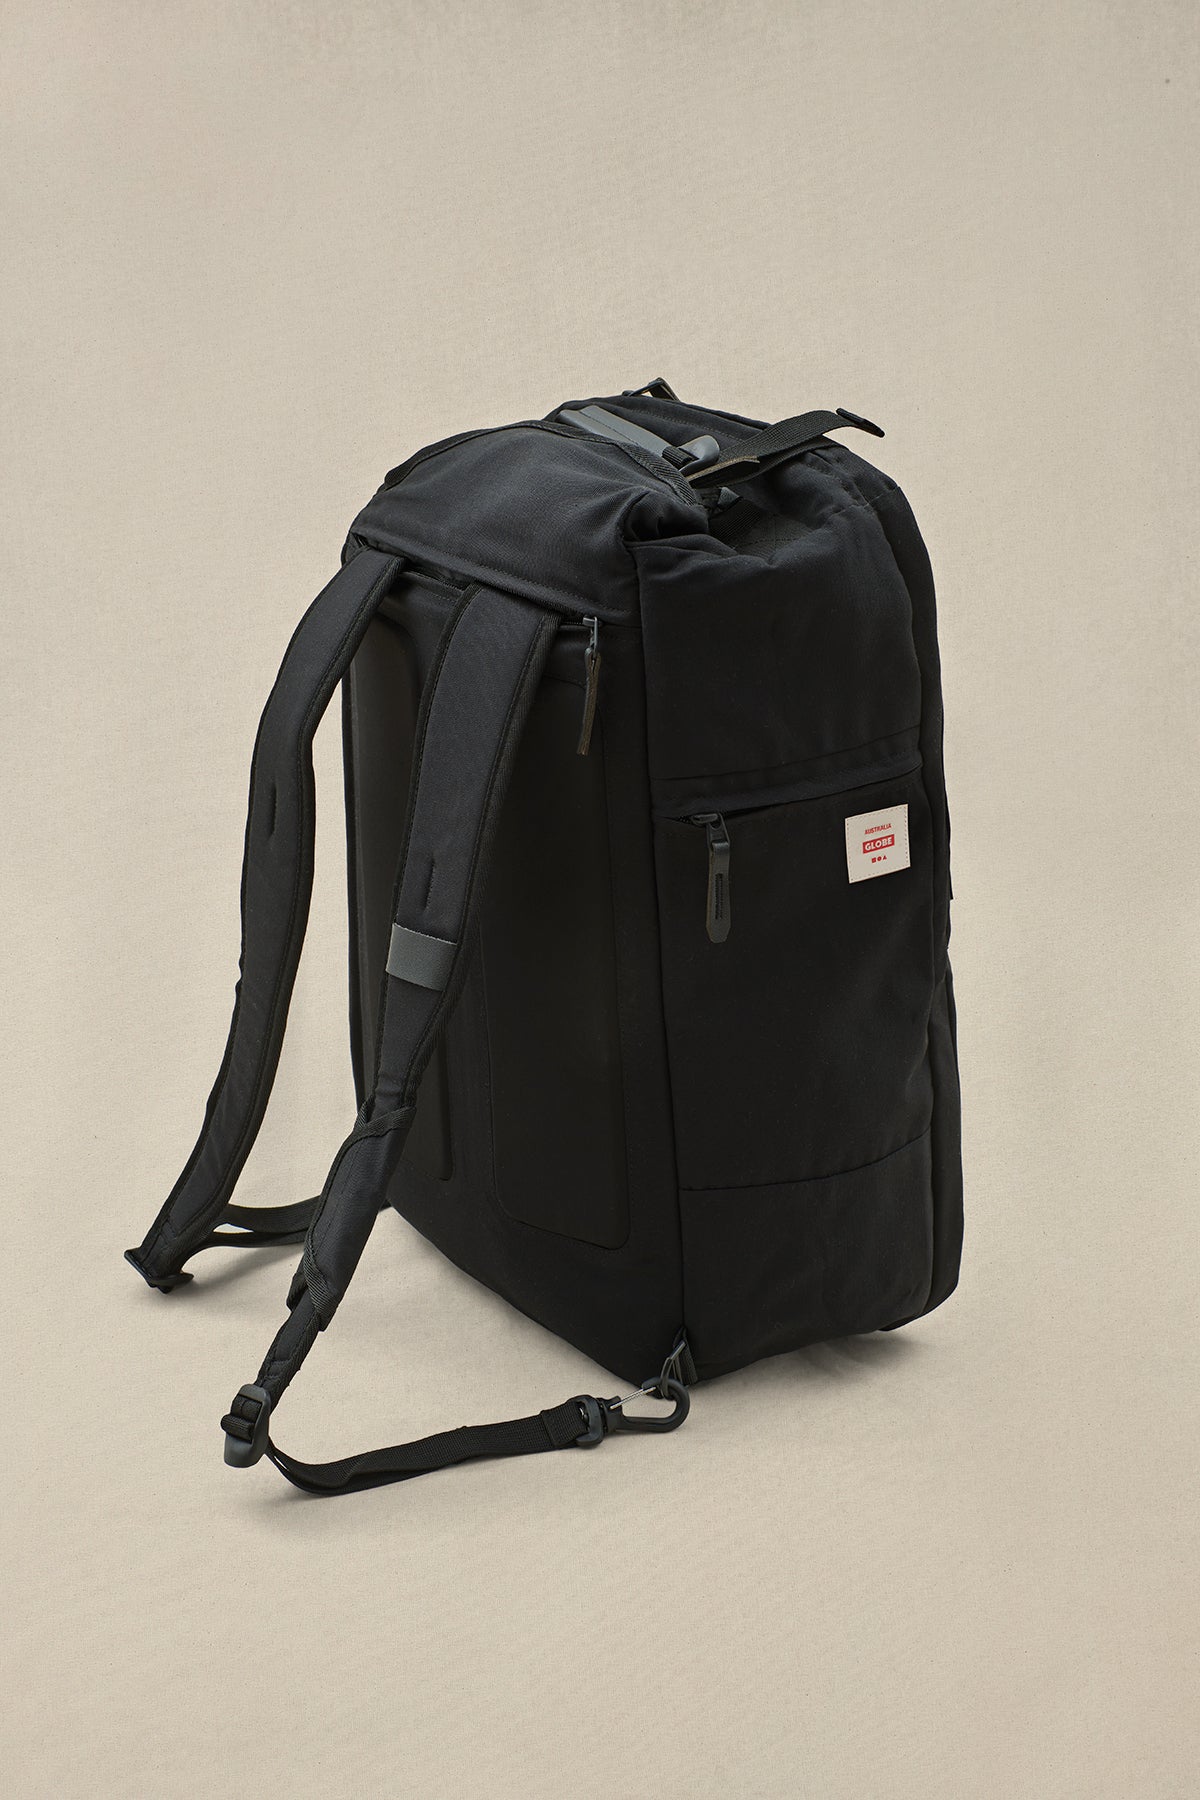 Velocity 3 in 1 Travel Bag, Apparel Globe Brand Australia